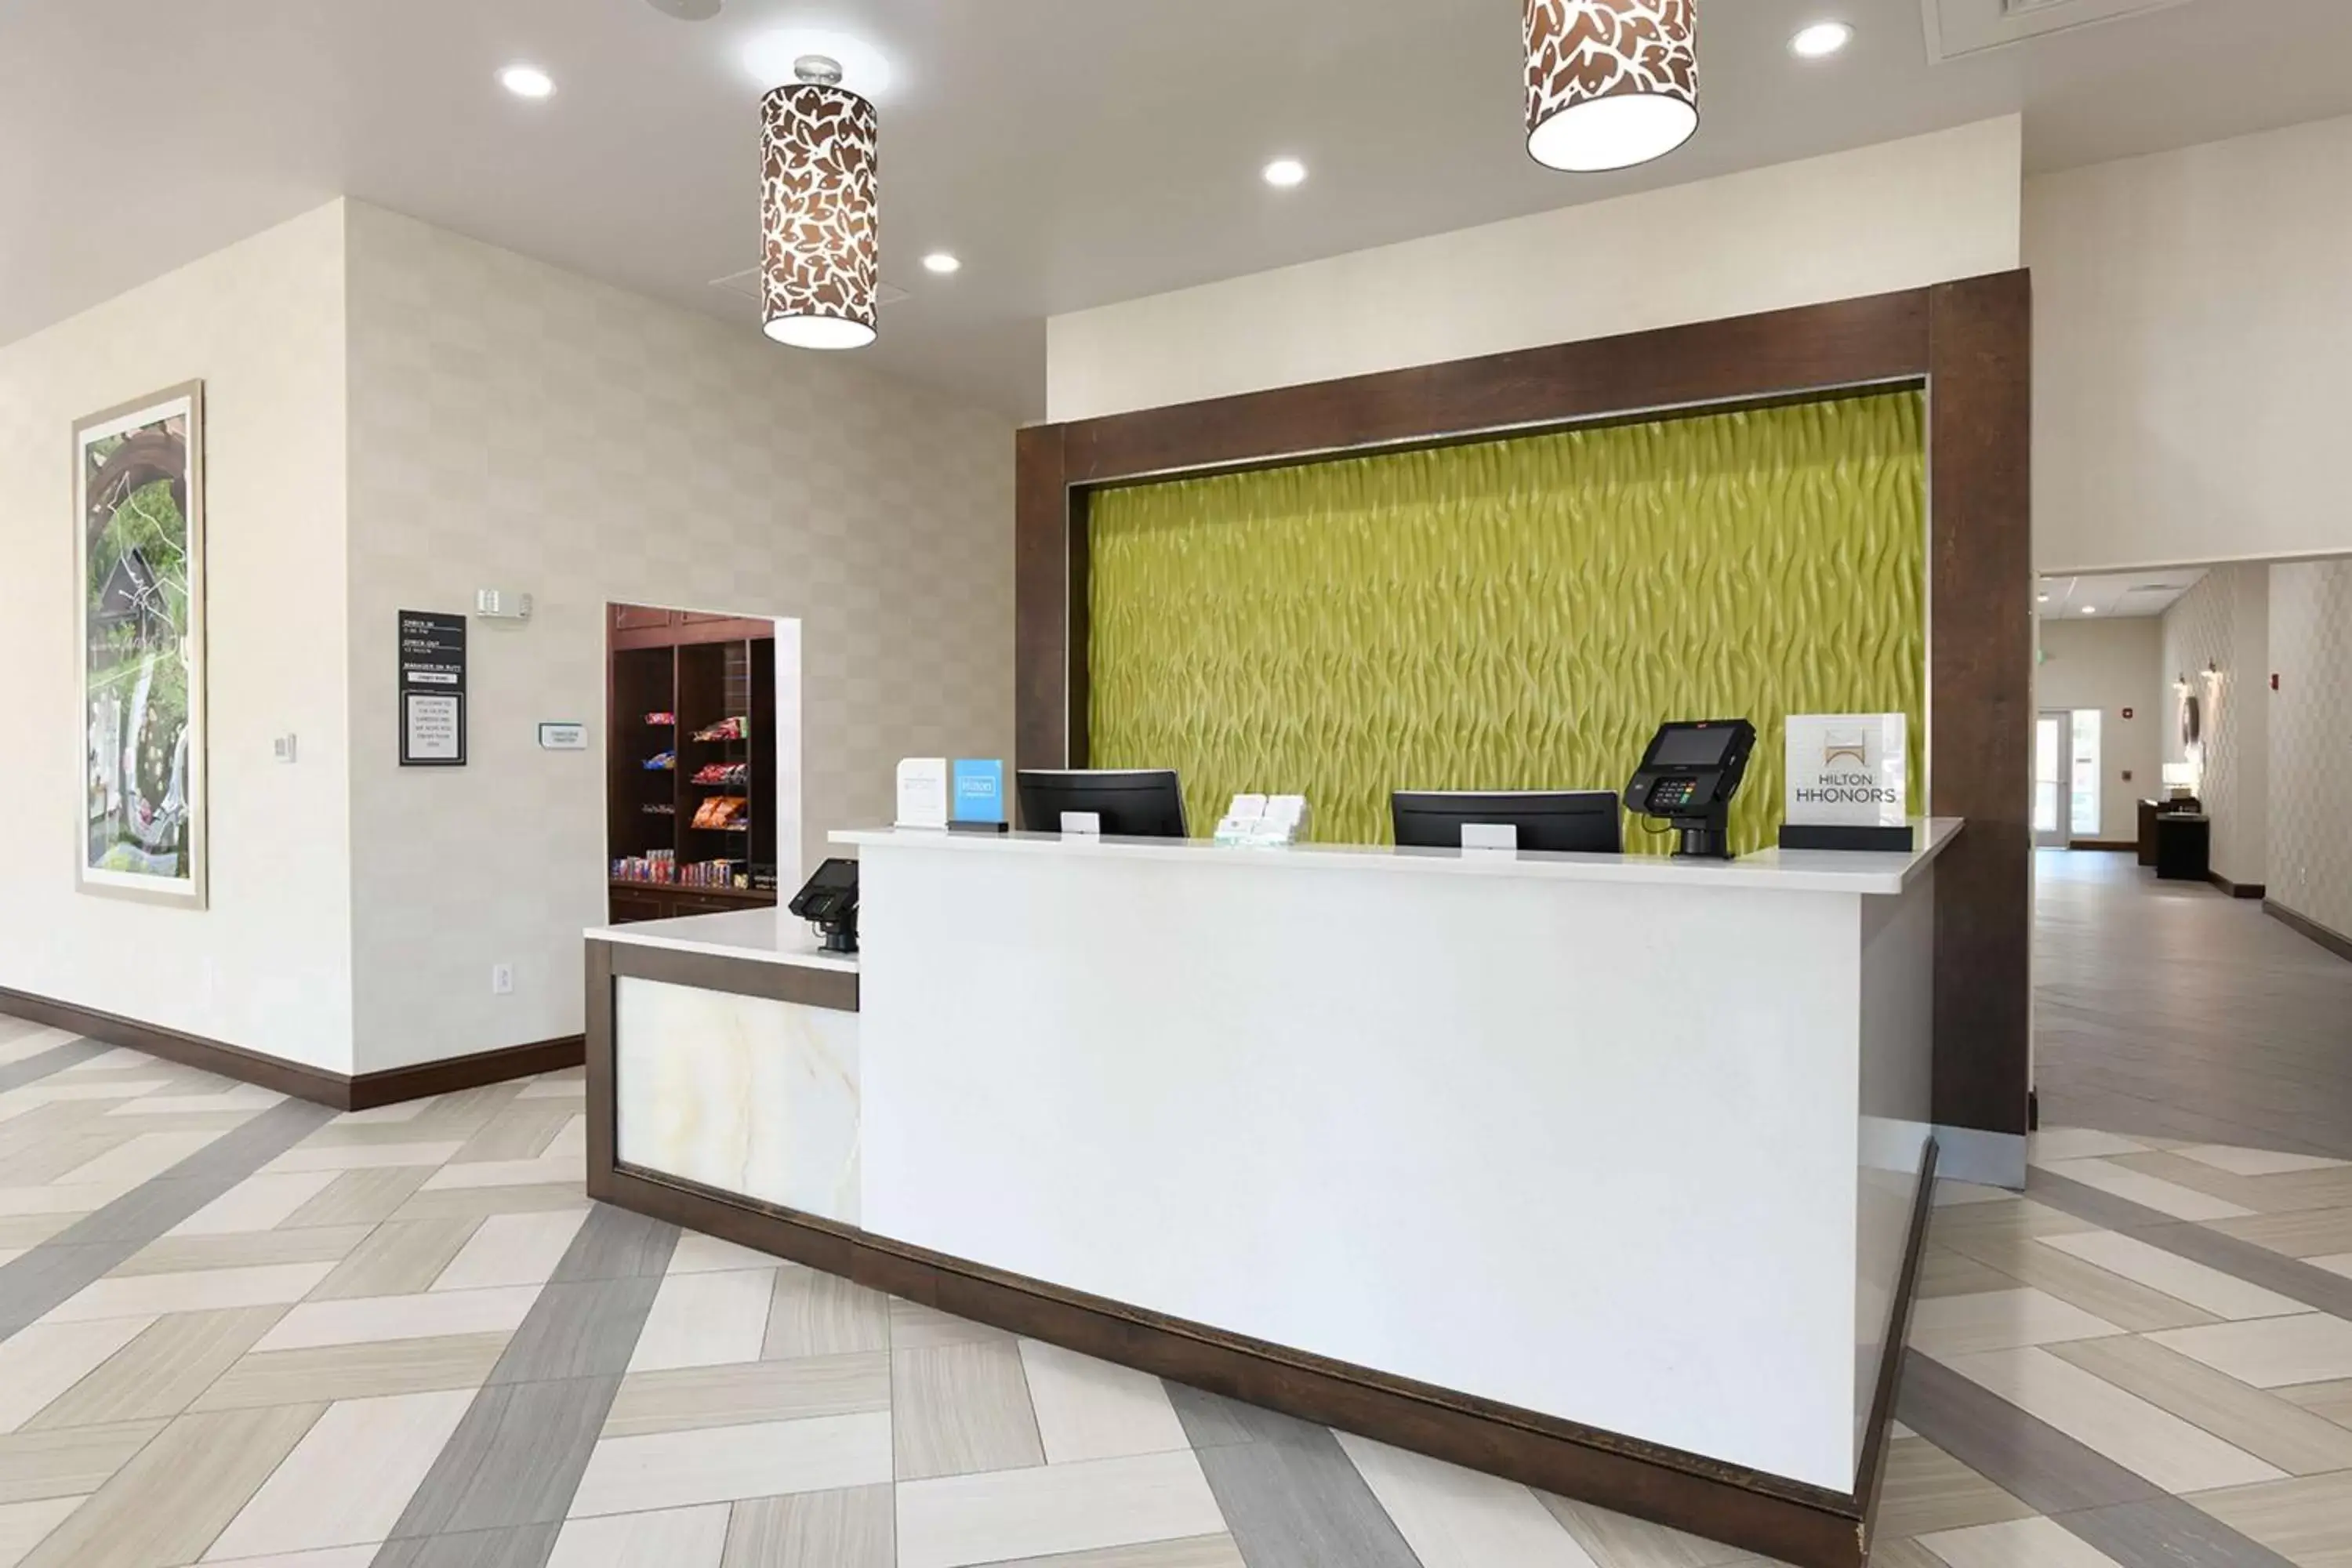 Lobby or reception, Lobby/Reception in Hilton Garden Inn Jacksonville